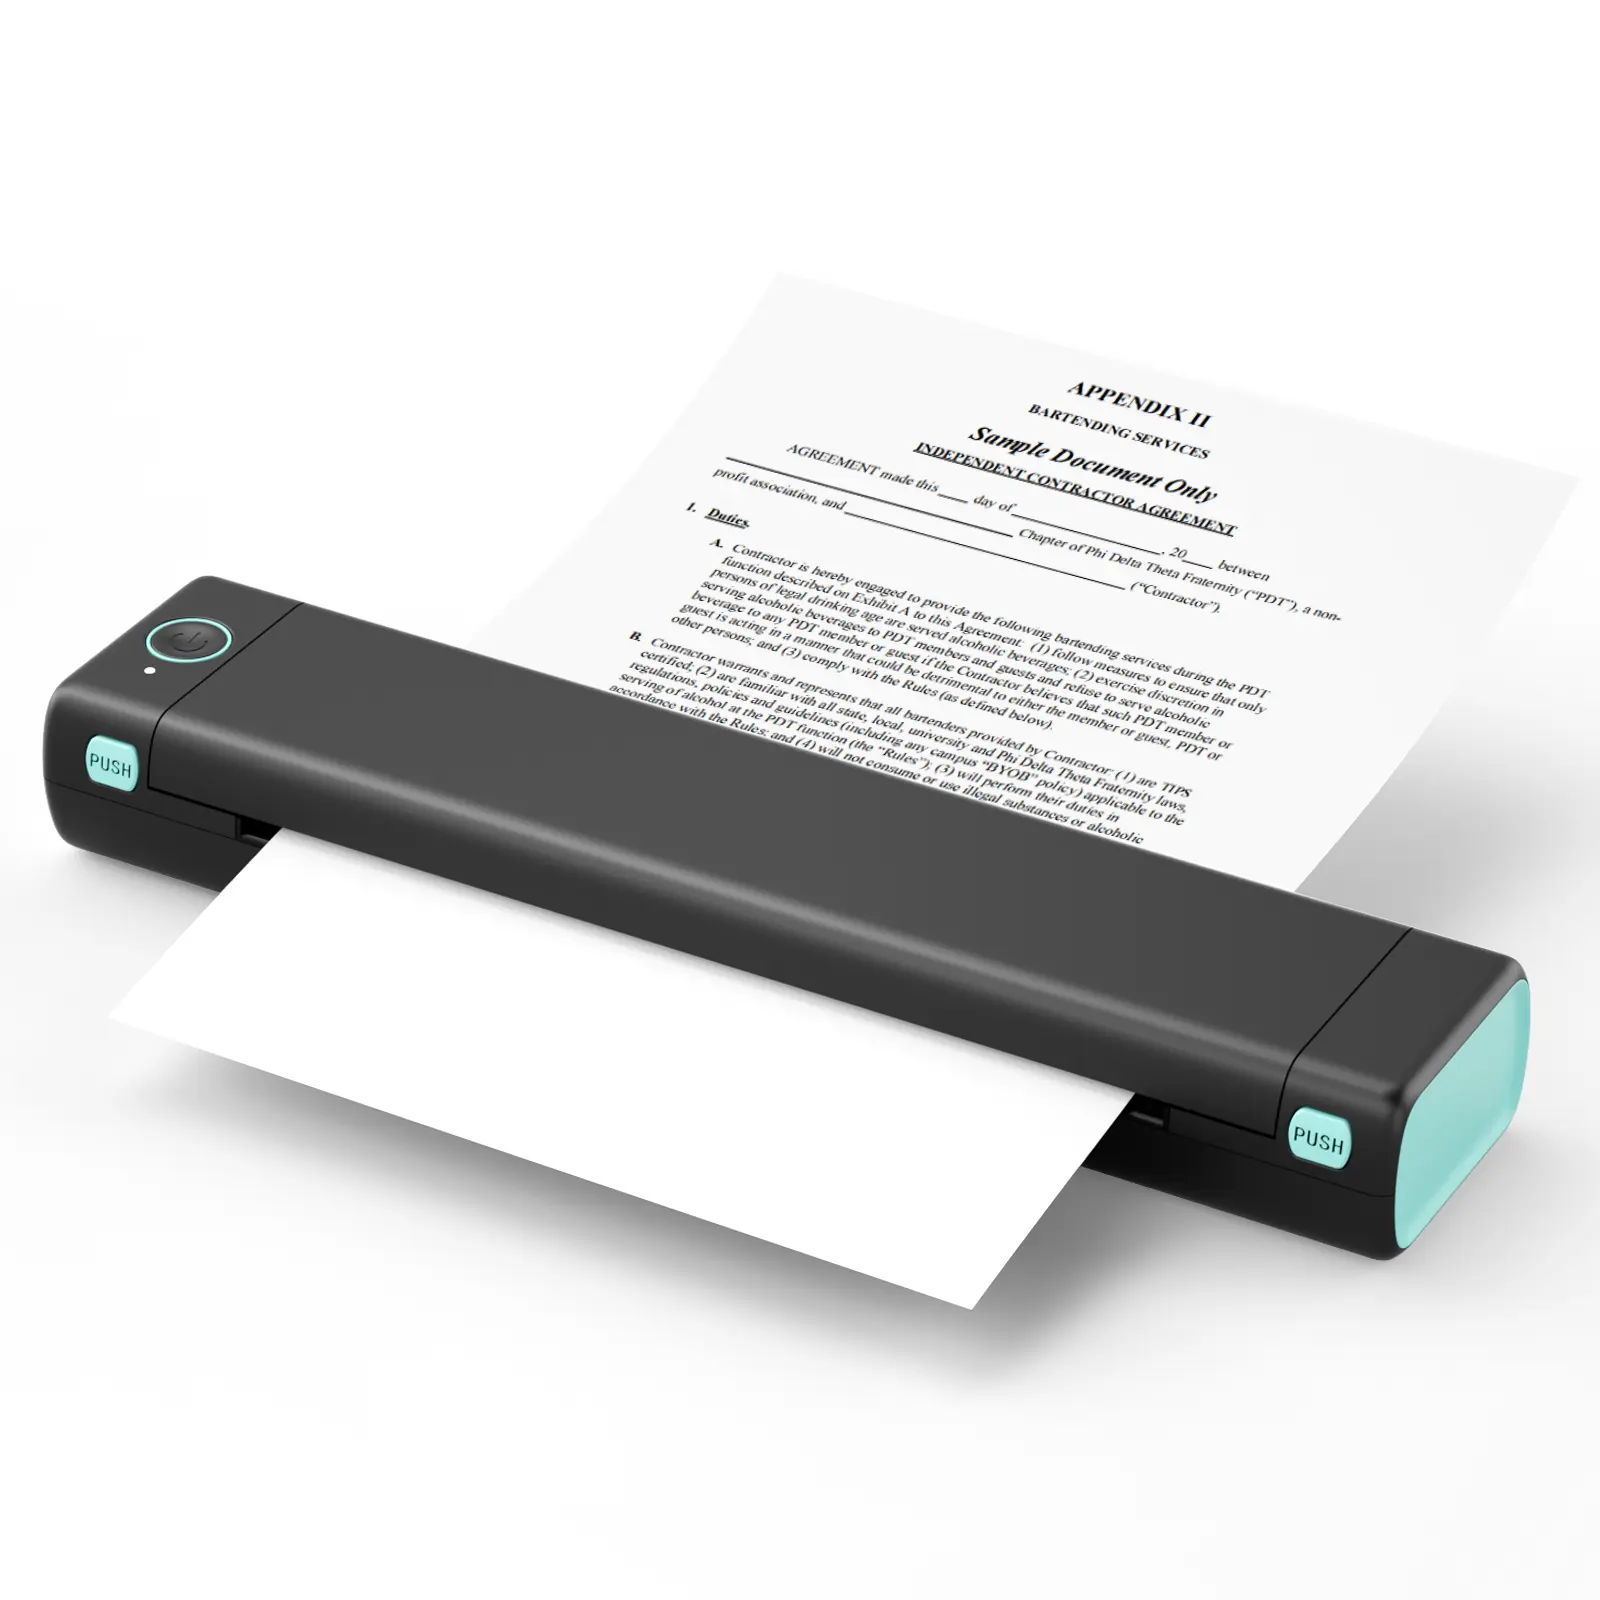 Phomemo M08F A4-Drucker tragbarer Drucker thermischer drahtloser Taschendrucker zum Drucken von PDF, Word, Bildern, dem Web von Ihrem Telefon